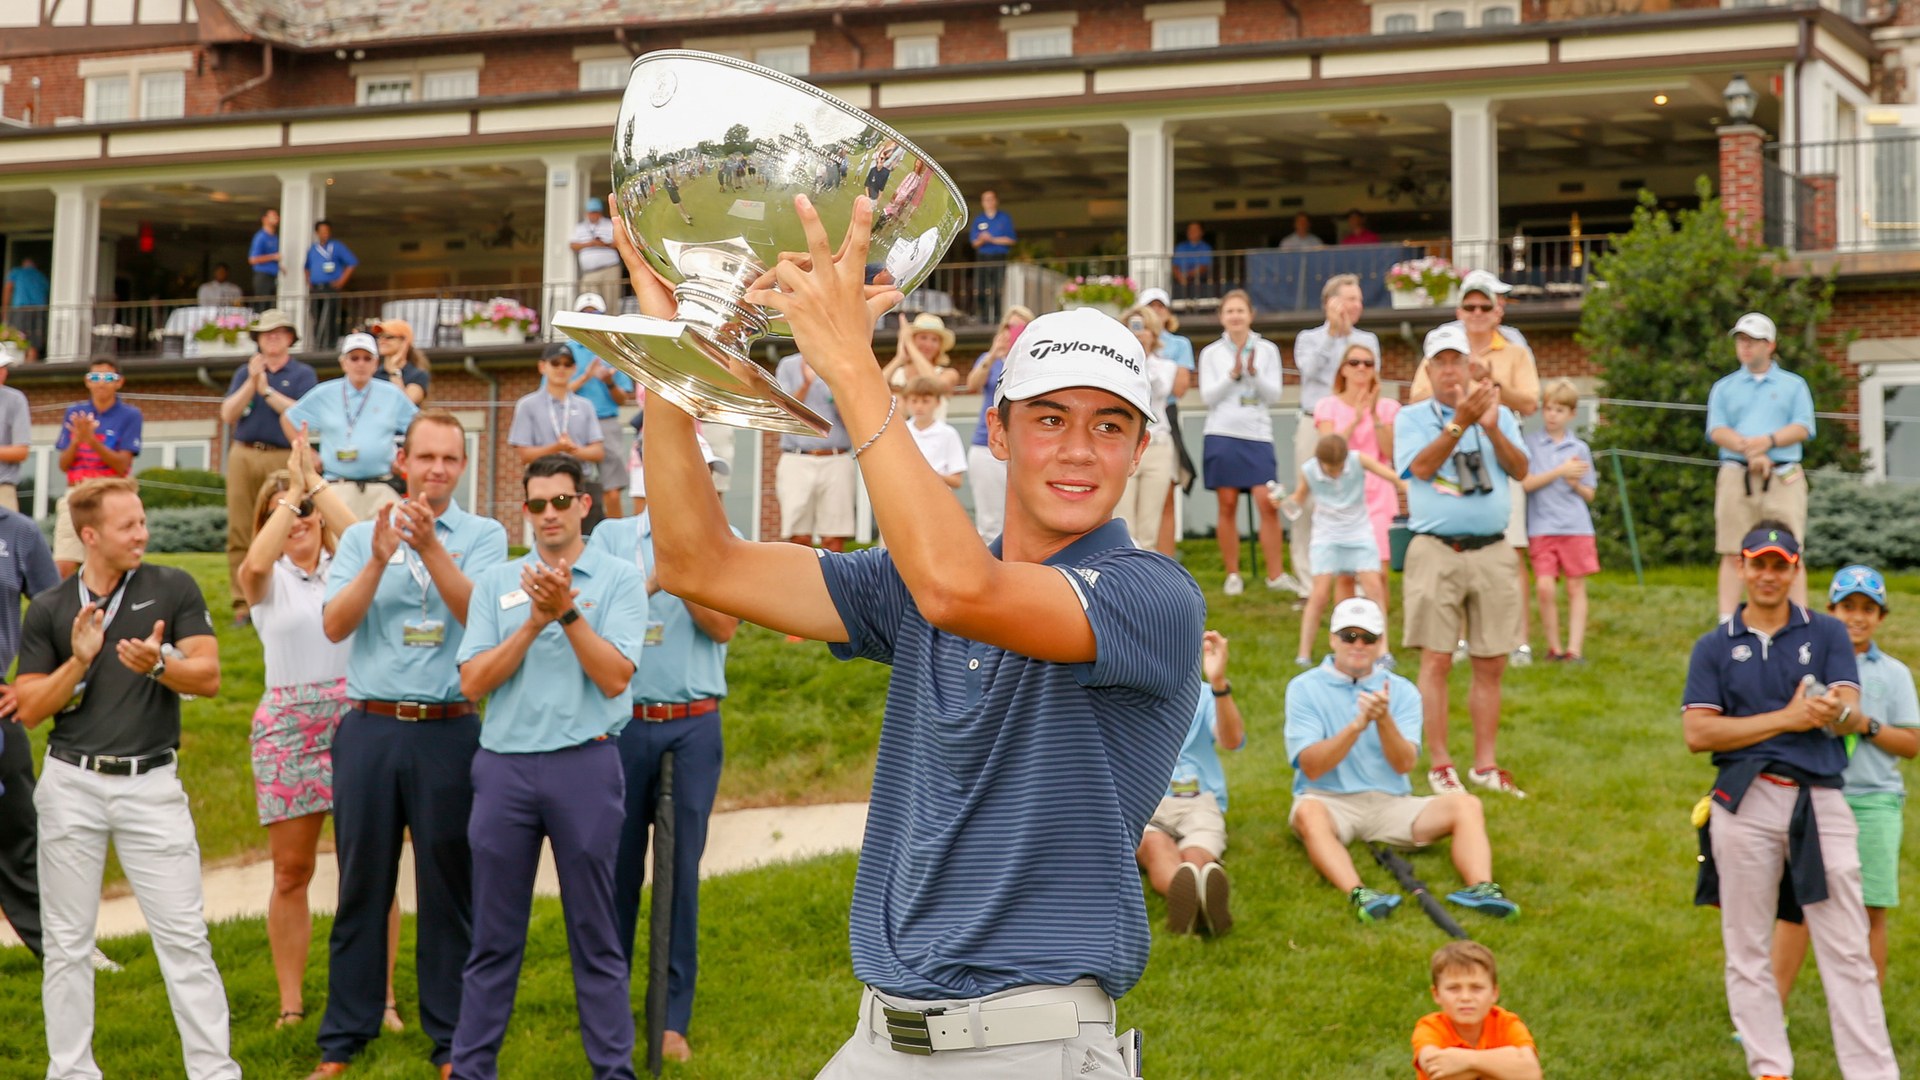 Golfer 16 tuổi giành vé dự U.S. Open 2019 sau chiến thắng kịch tính ở giải trẻ